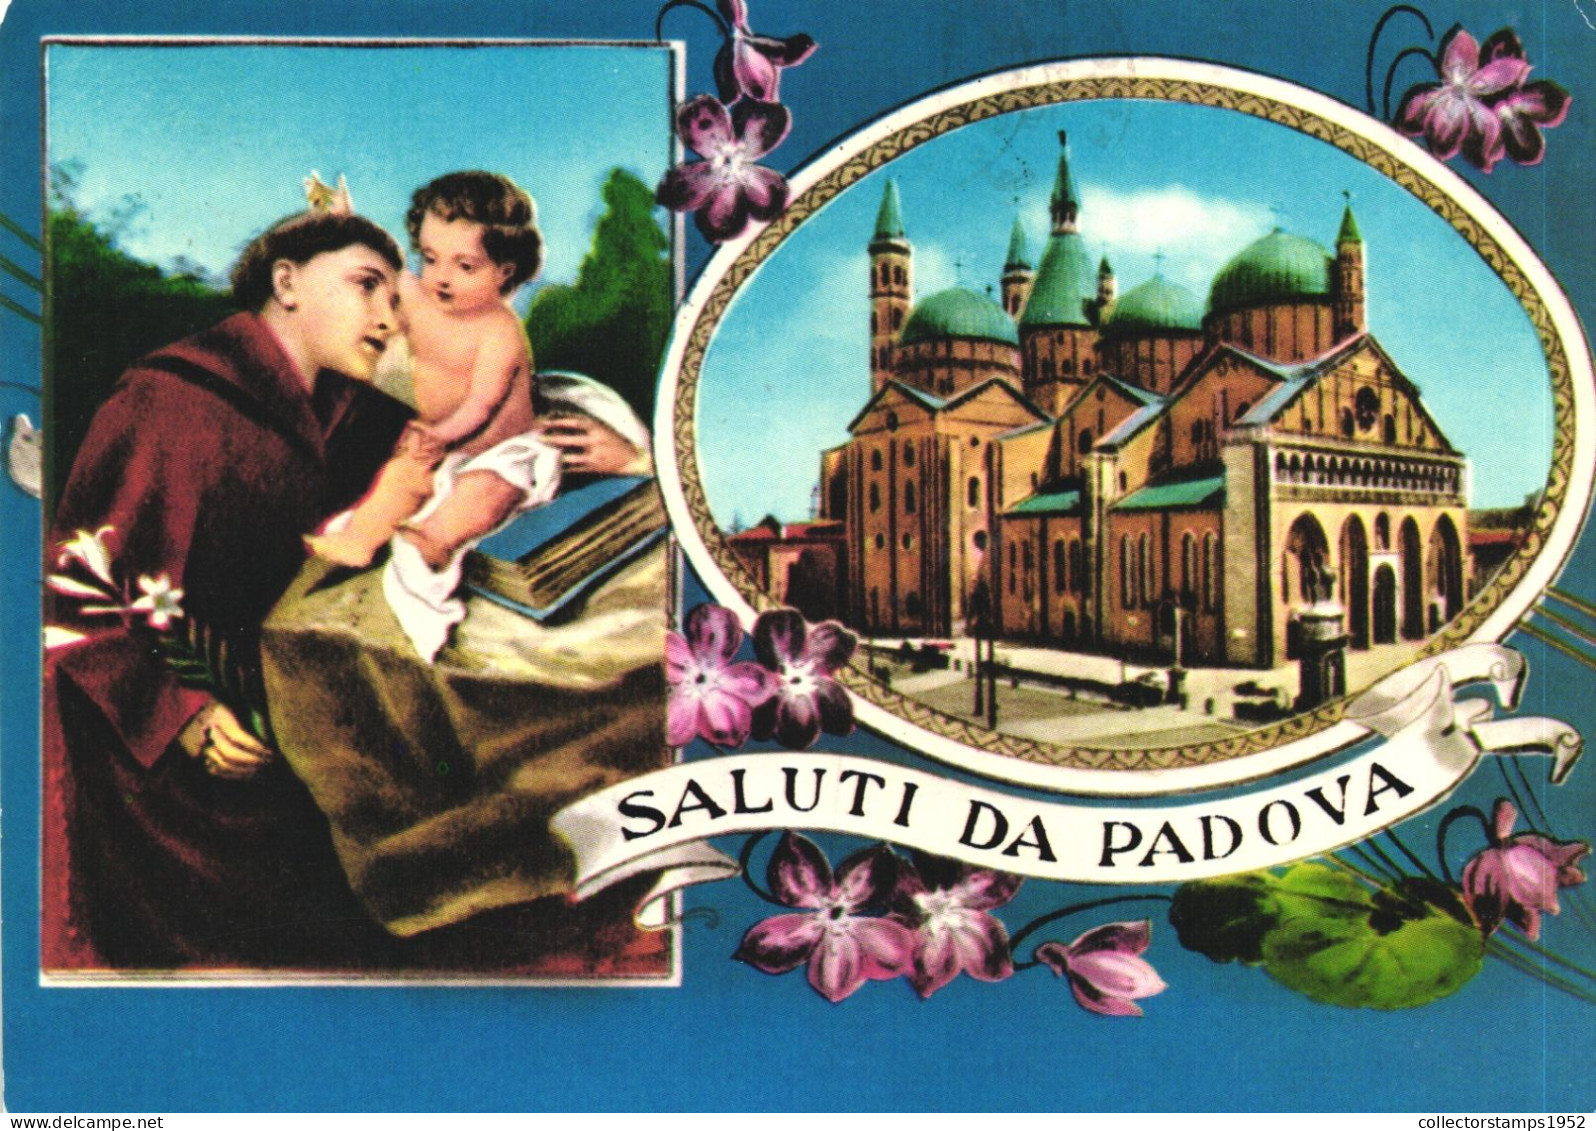 PADOVA, PADUA, VENETO, MULTIPLE VIEWS, SAINT, BABY JESUS, CHURCH, ARCHITECTURE, FLOWERS, ITALY, POSTCARD - Padova (Padua)